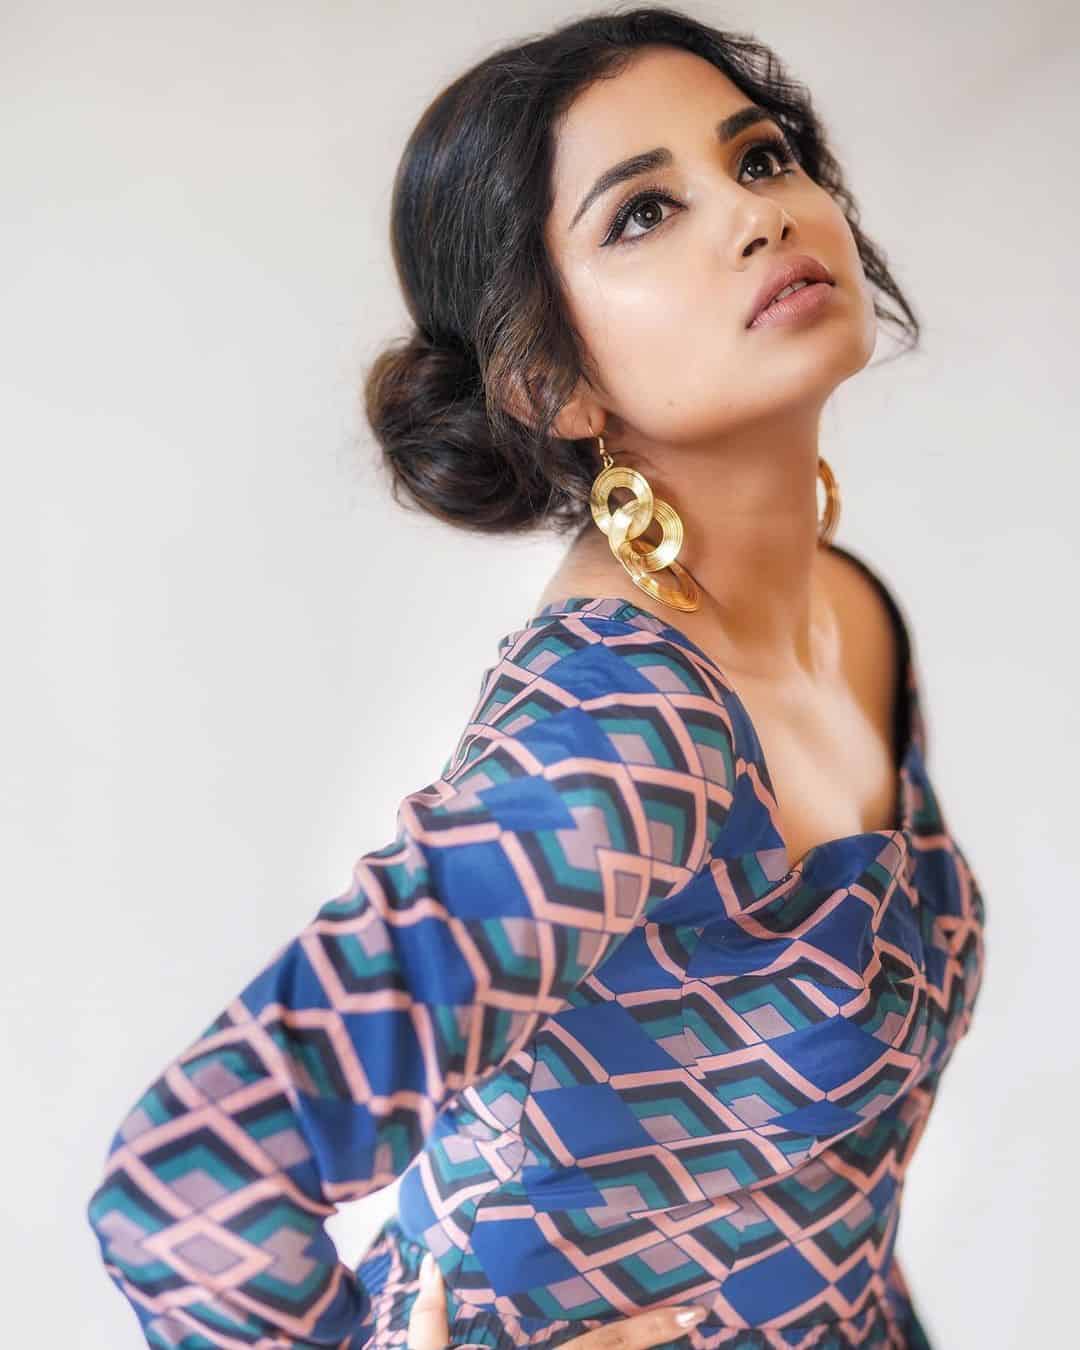 Actress Anupama Parameswaran Photos